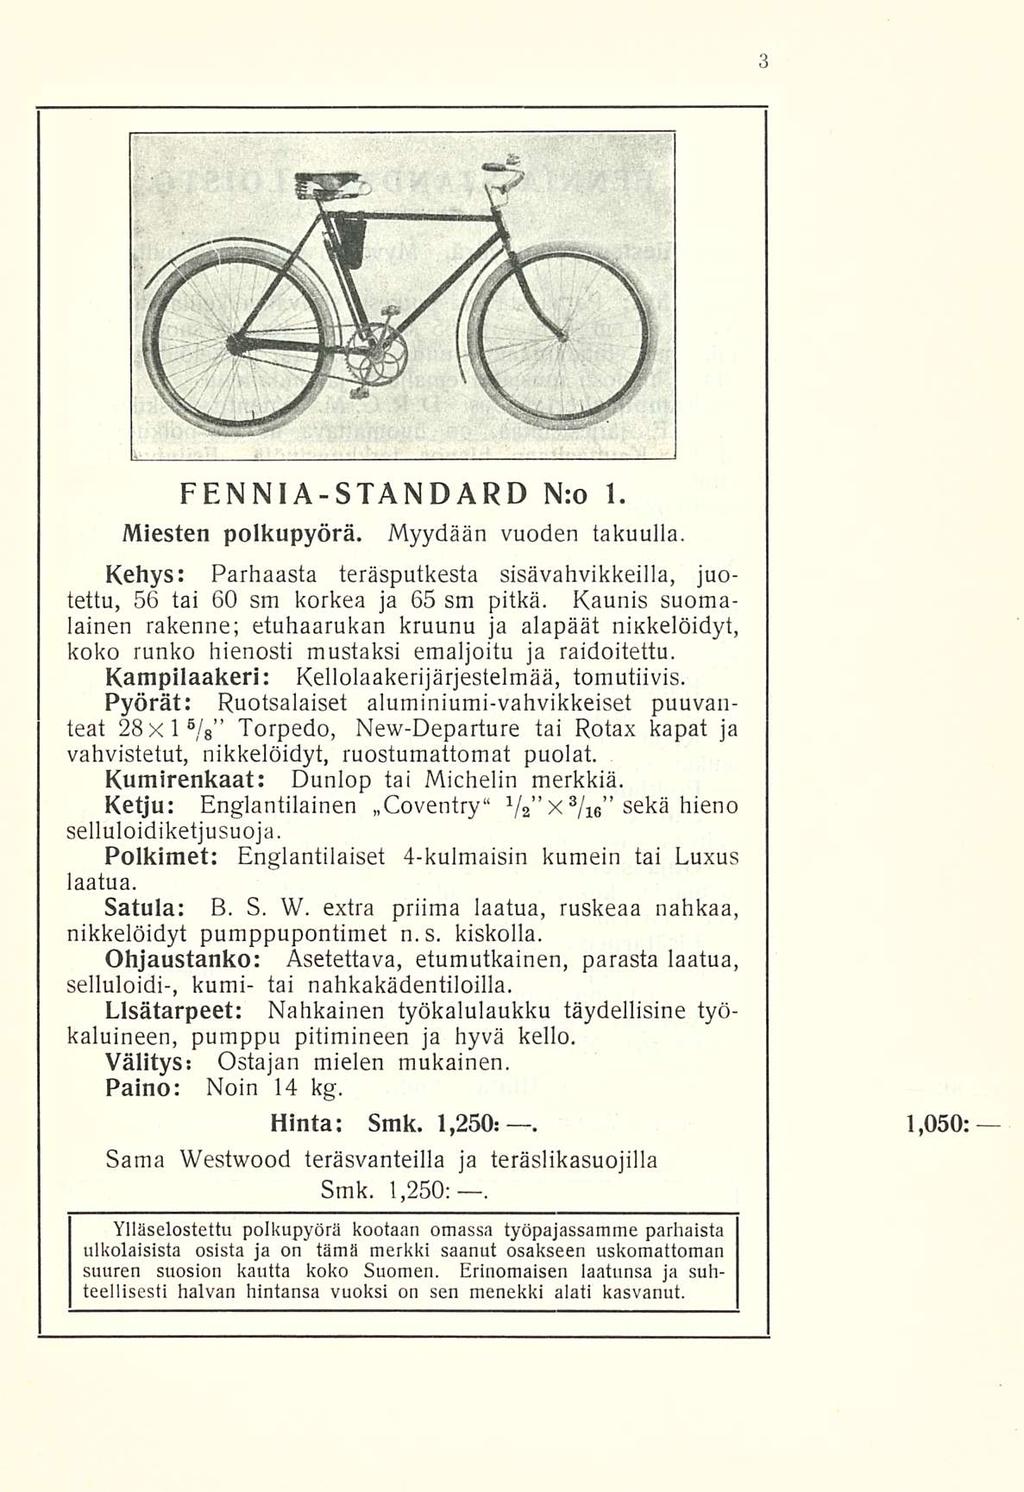 FENNIA-STANDARD N:o 1. Miesten polkupyörä. Myydään vuoden takuulla. Kehys: Parhaasta teräsputkesta sisävahvikkeilla, juotettu, 56 tai 60 sm korkea ja 65 sm pitkä.